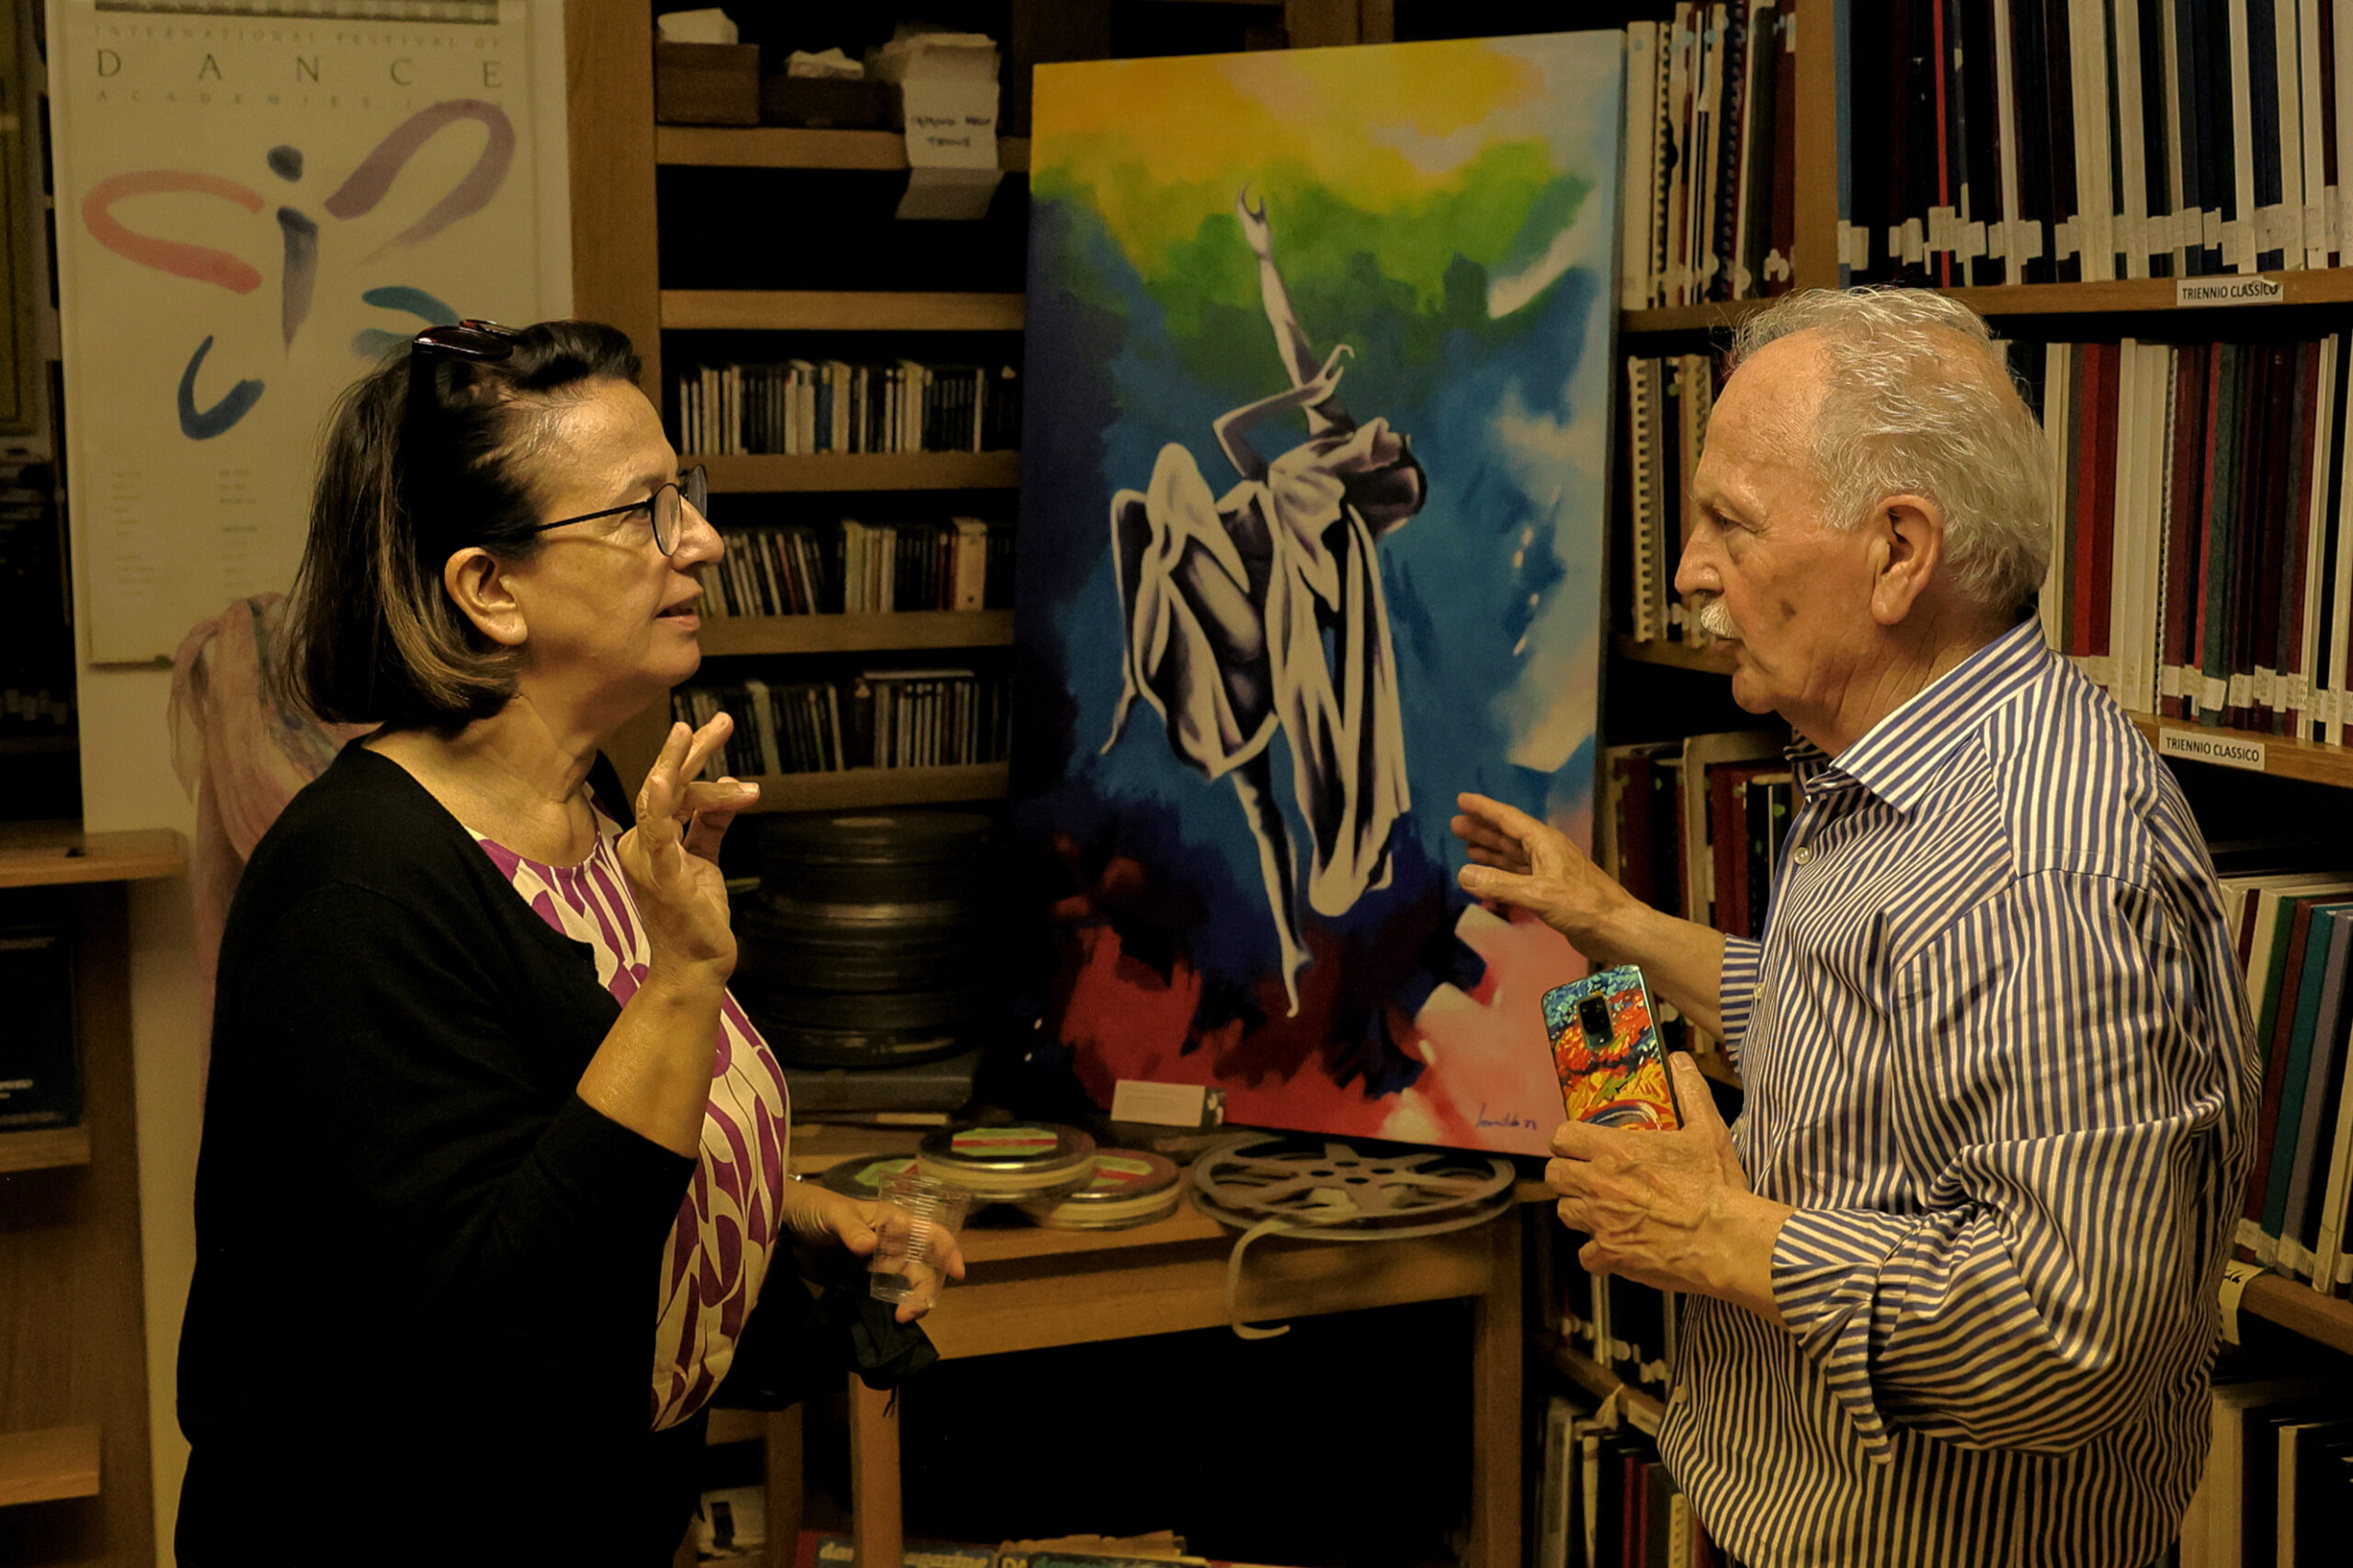 Donatella Bertozzi e Leonildo Bocchino durante la mostra “Bellezza: il fascino Ruskaja” allestita presso la Biblioteca dell’Accademia Nazionale di Danza.